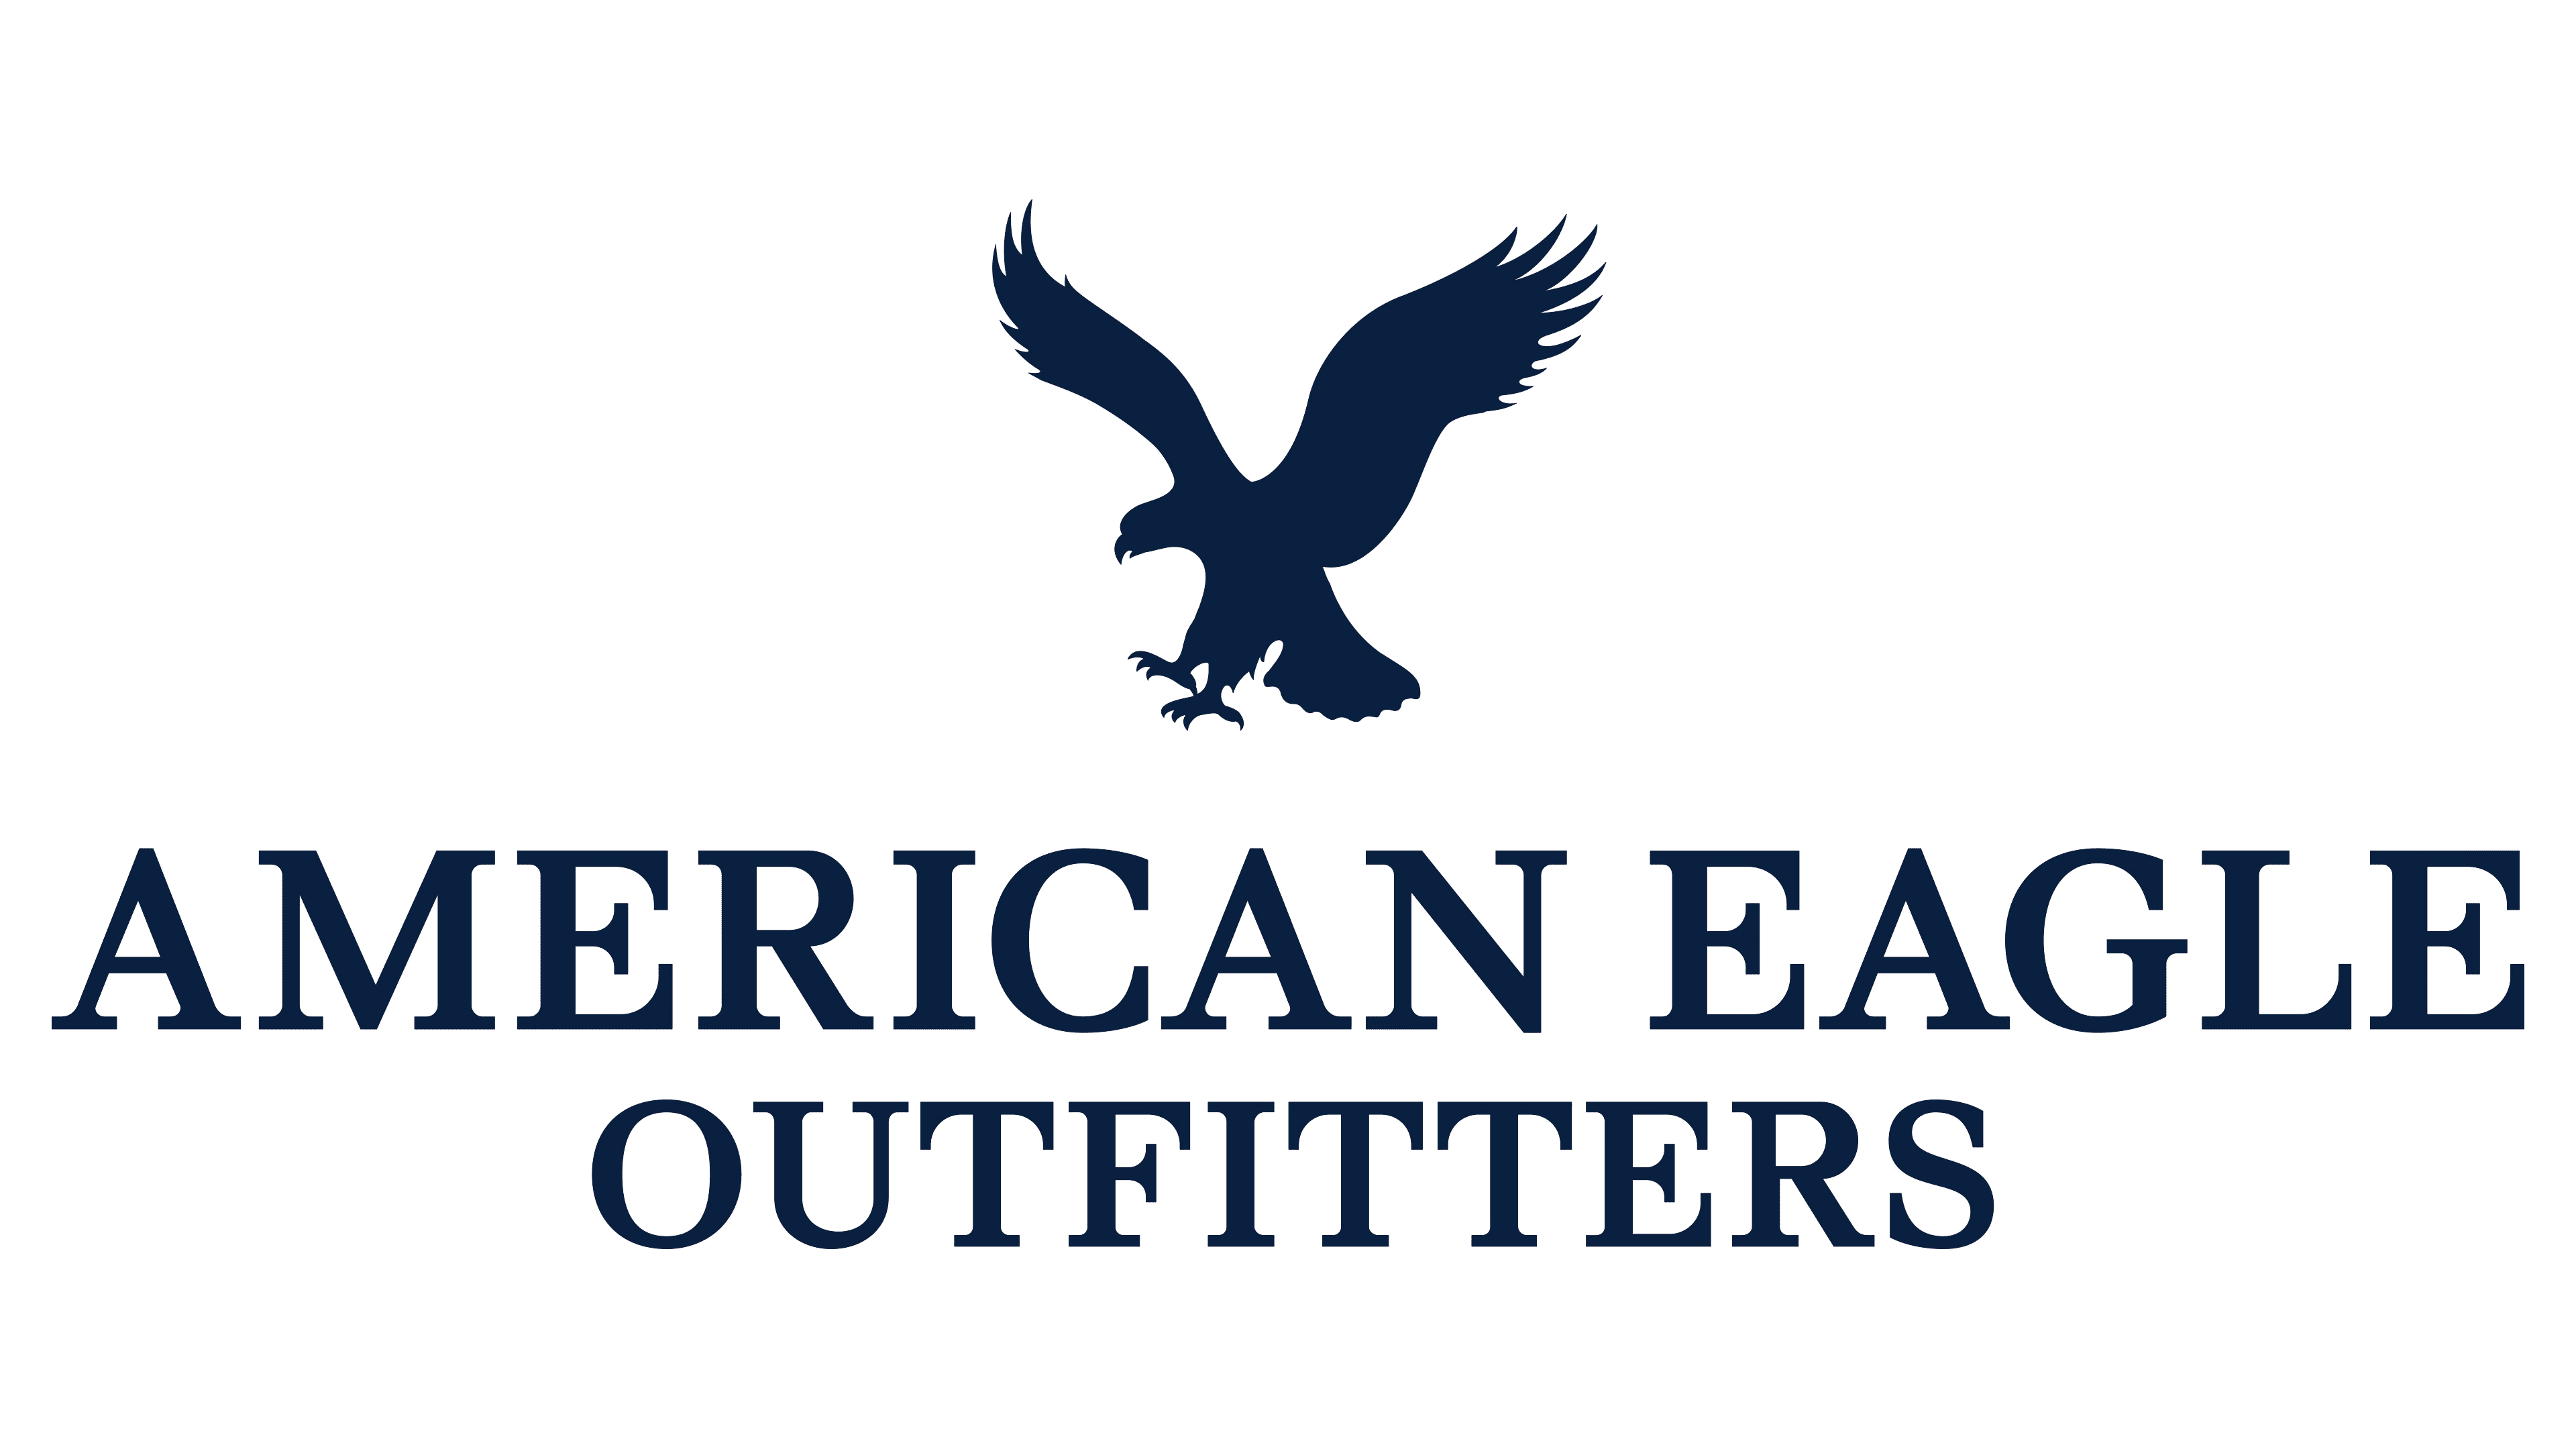 American-Eagle-logo